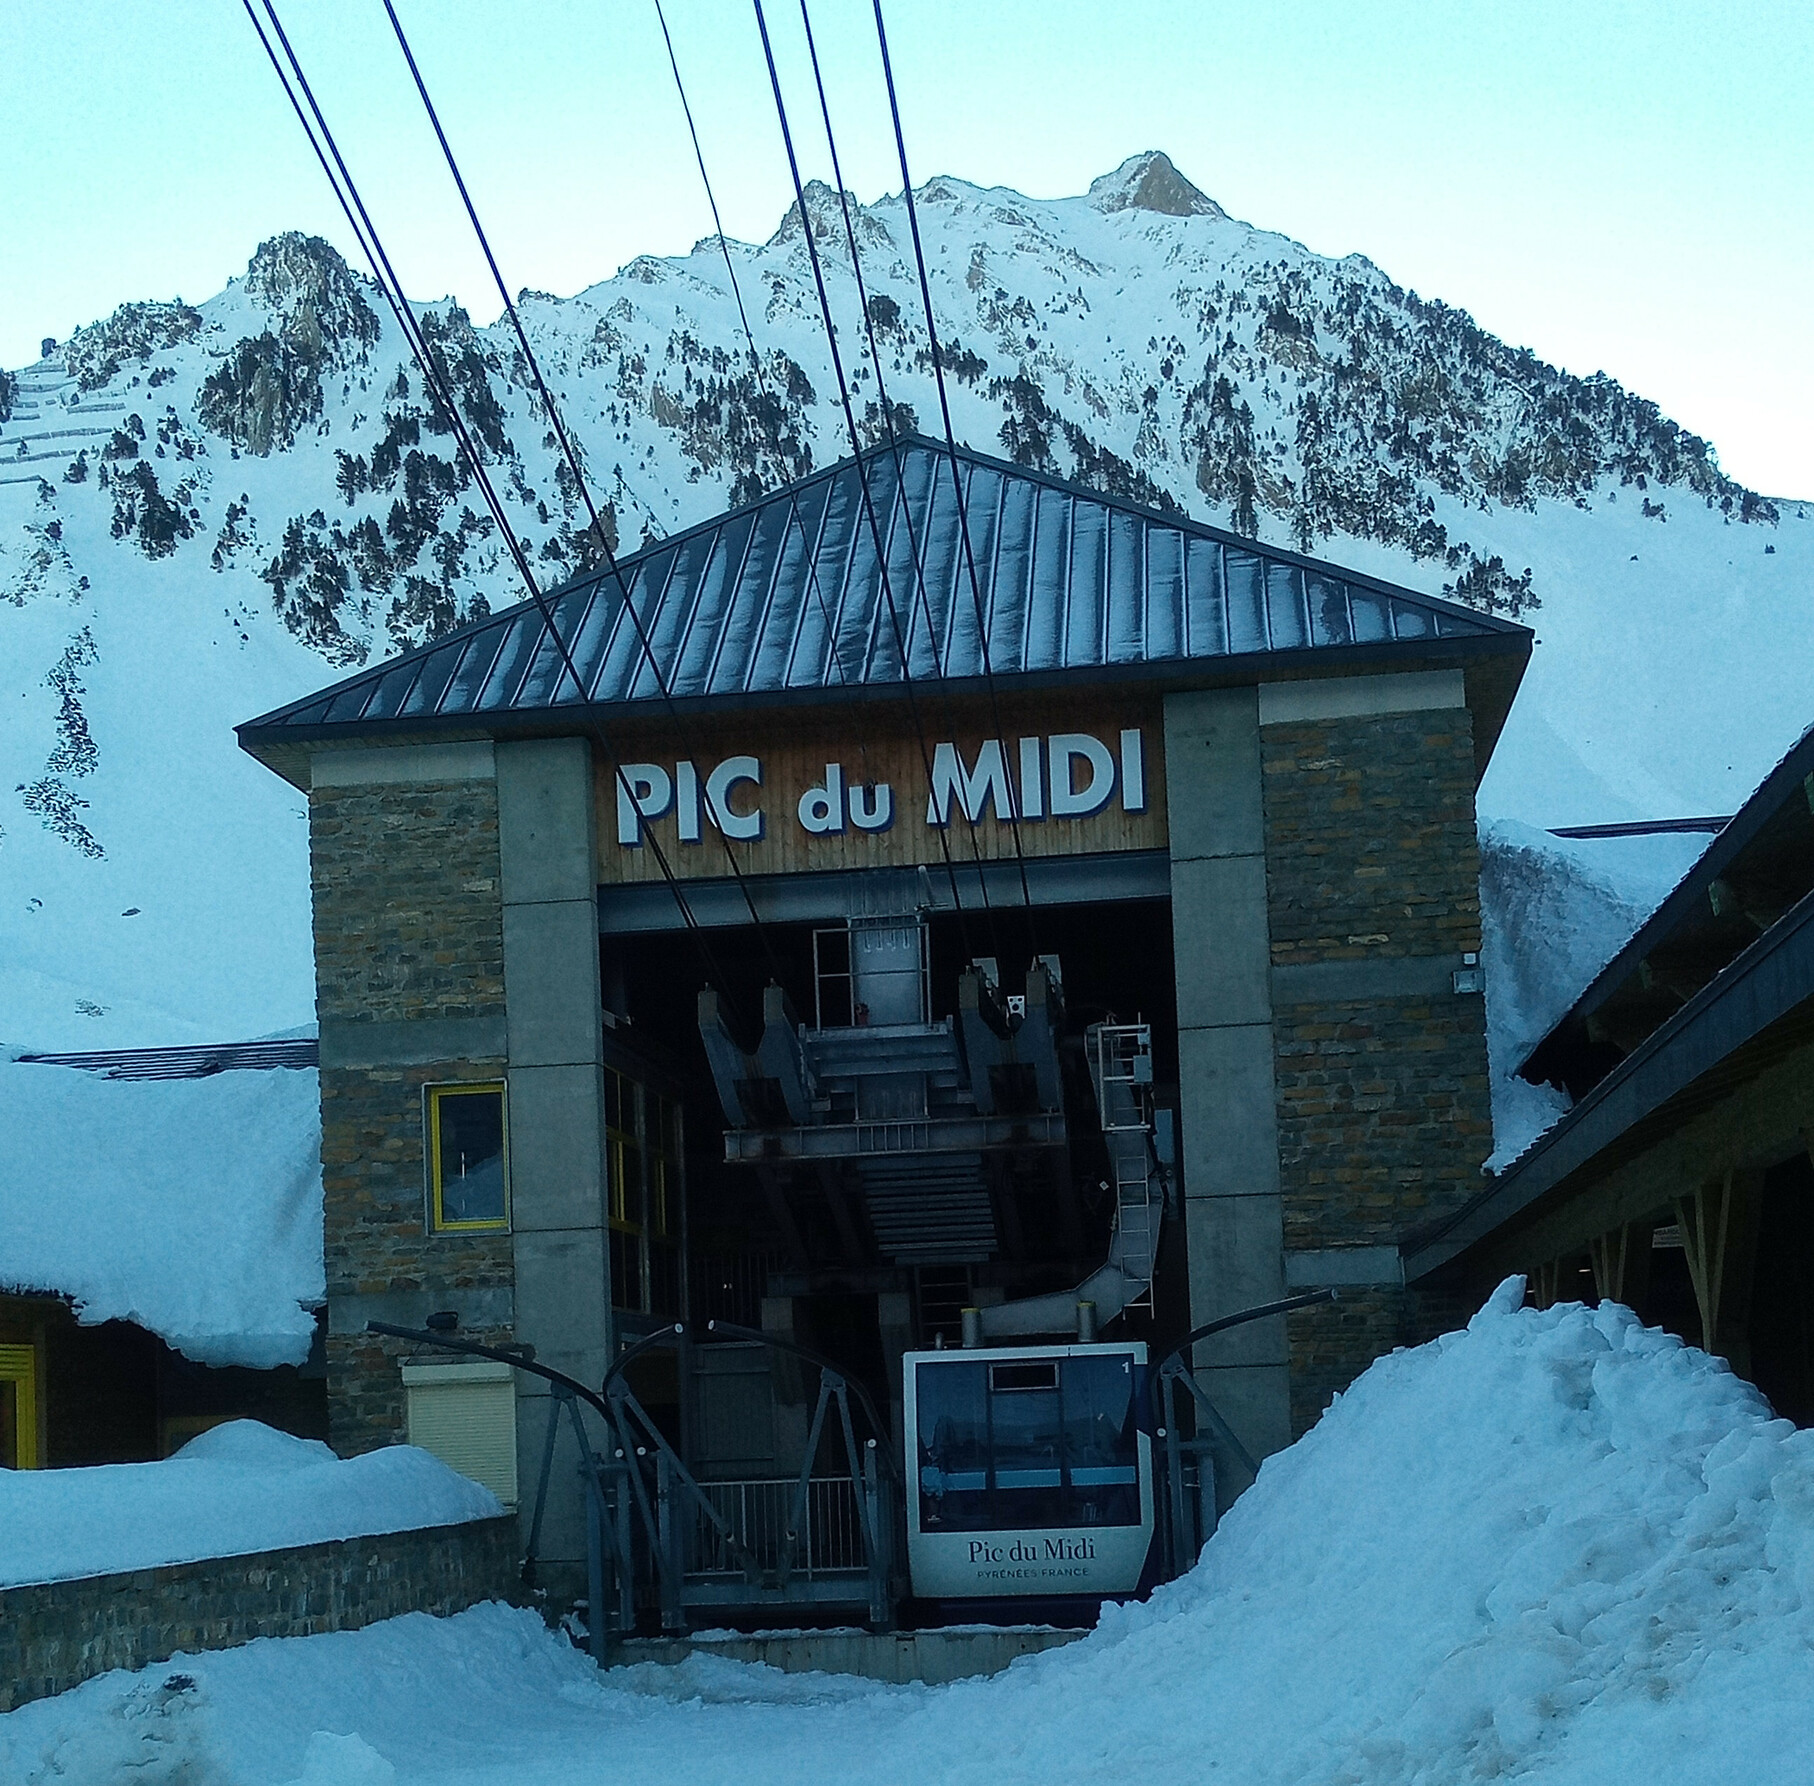 Un télécabine devant une montagne. Il est écrit « Pic du Midi » dessus.